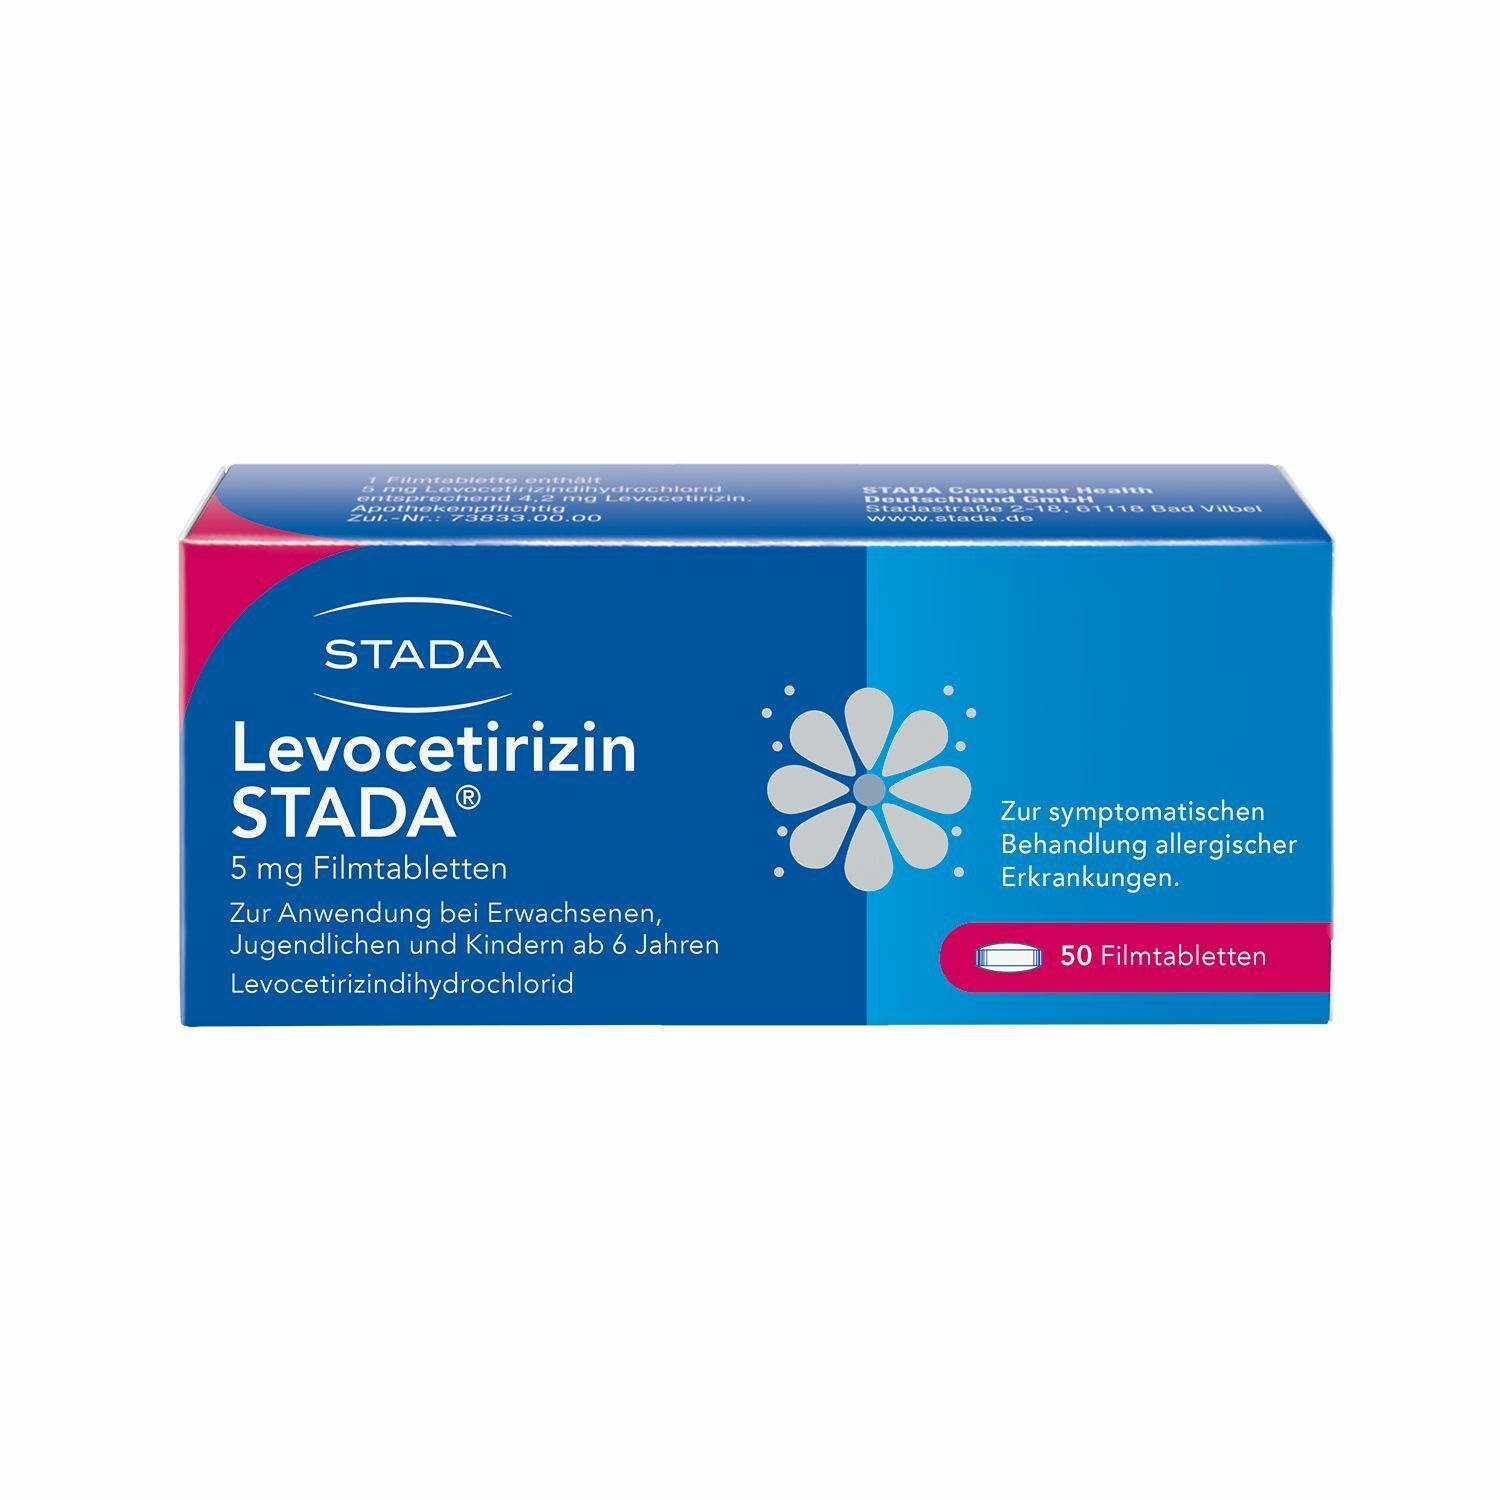 Levocetirizin Stada® 5 mg FIlmtabletten